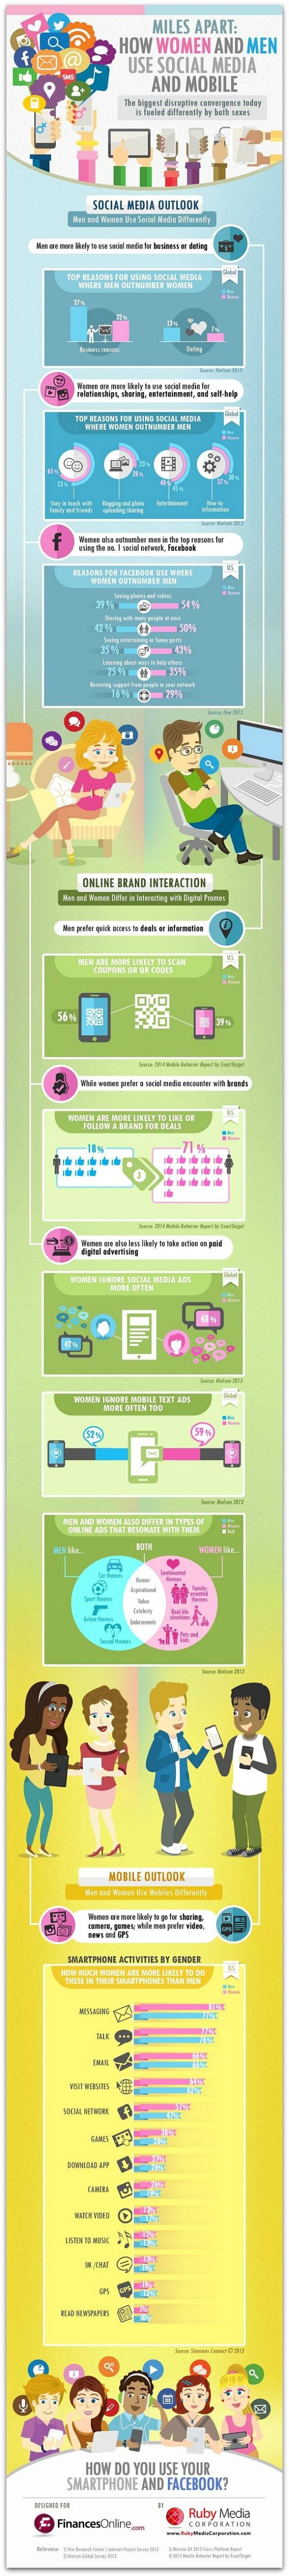 How_Men_Women_Use_Social_Media_Infographic